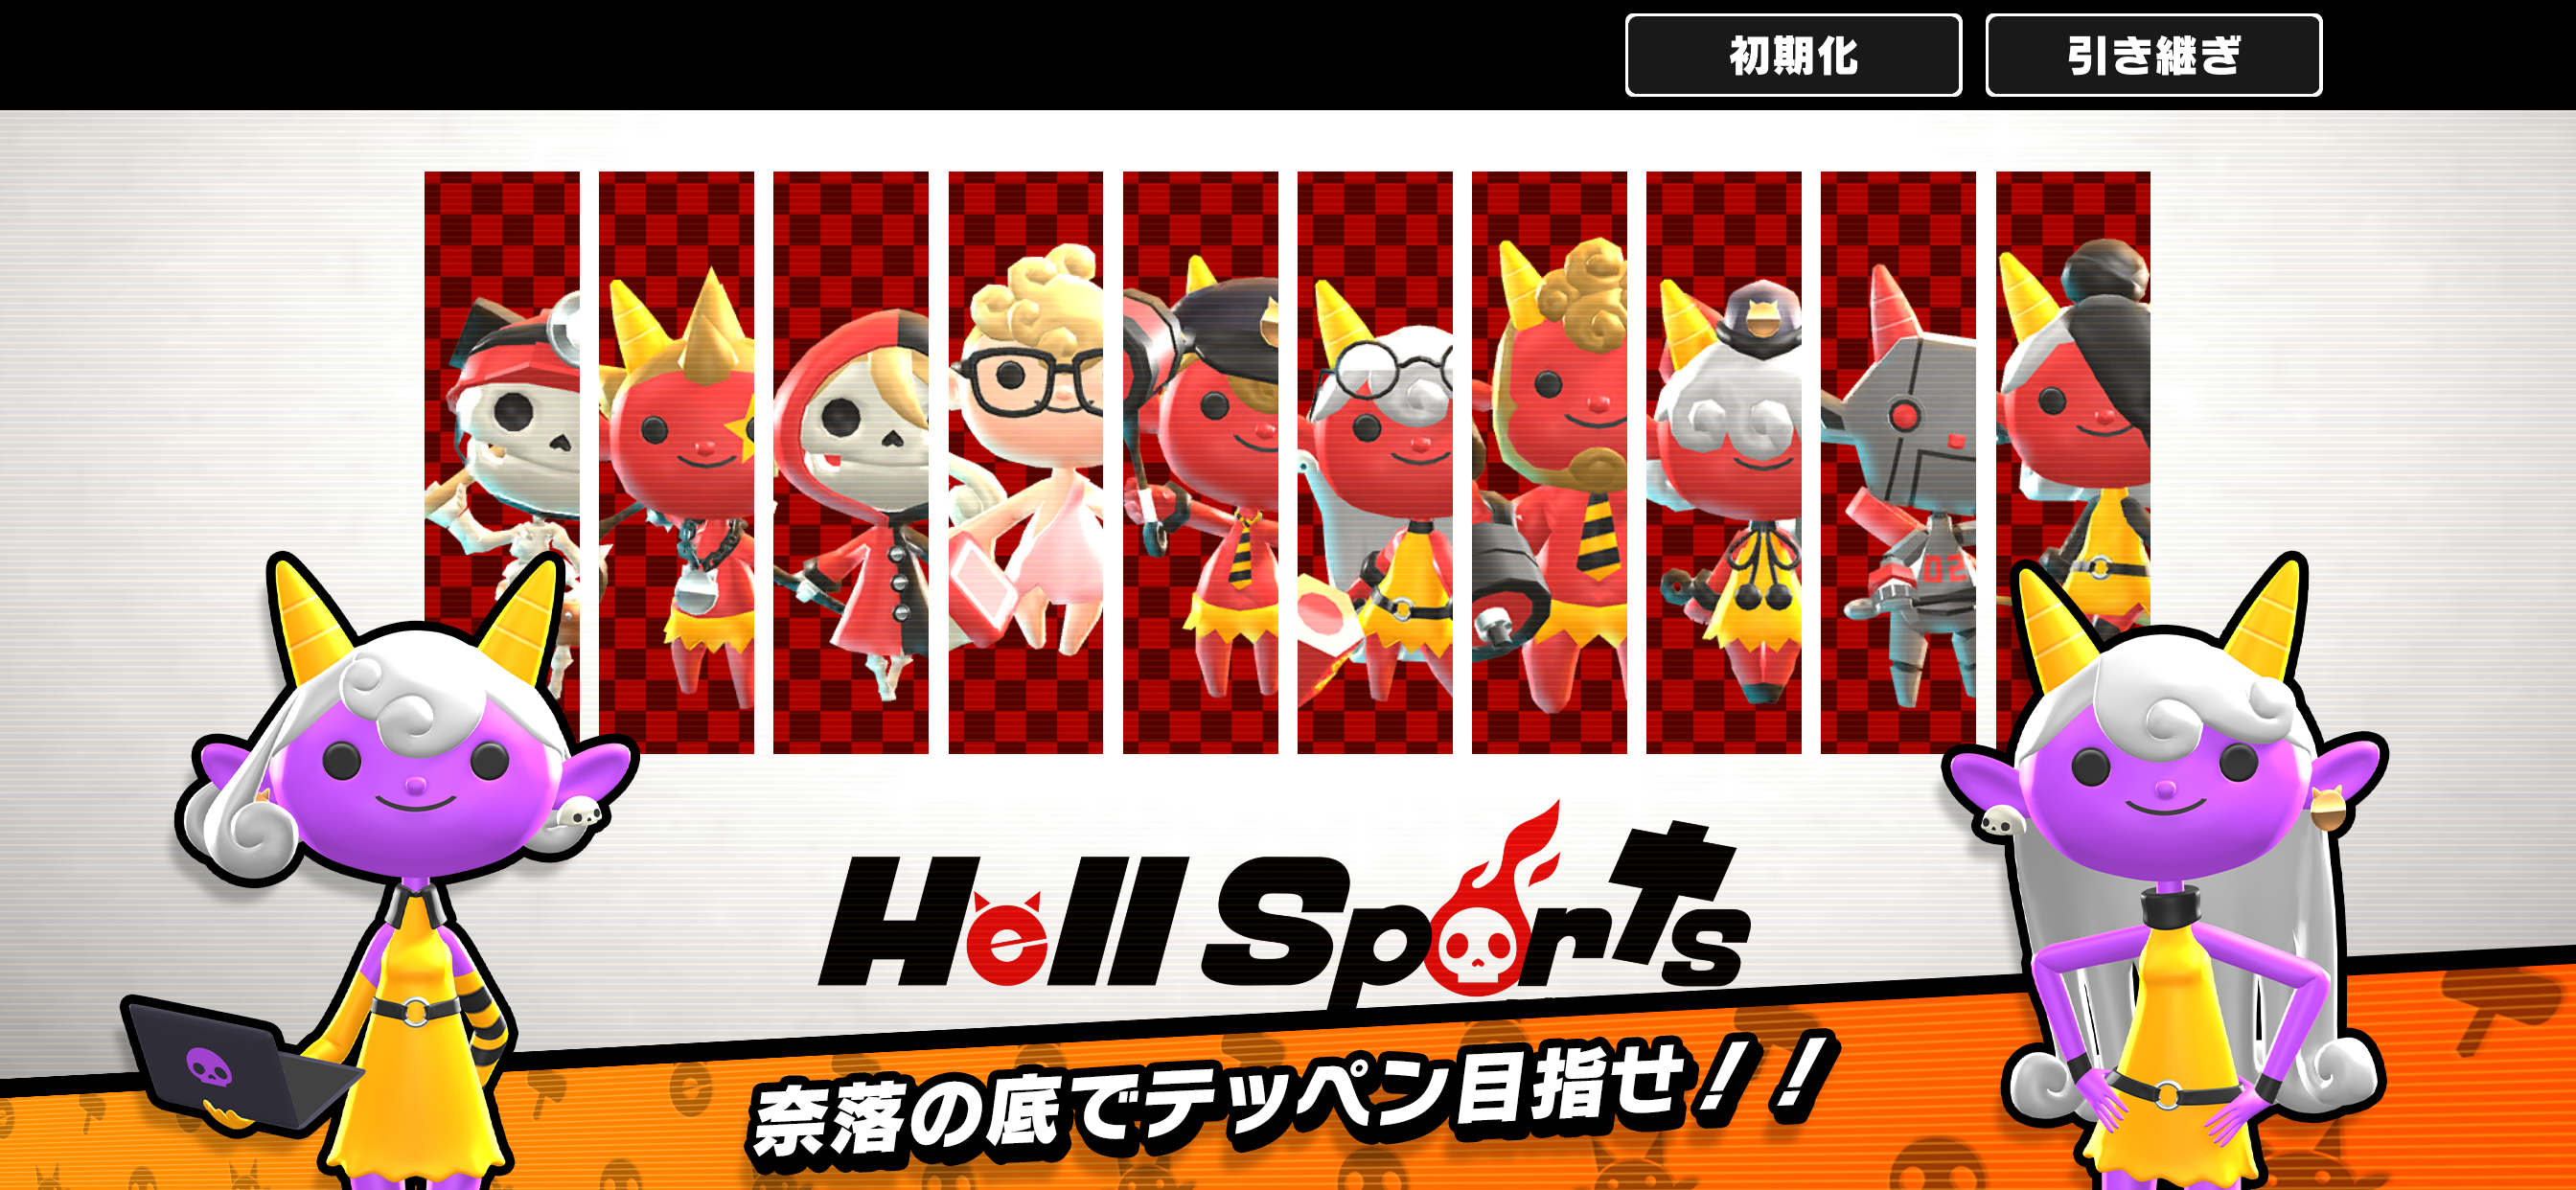 Hell Sports（ヘルスポーツ）のキャプチャ